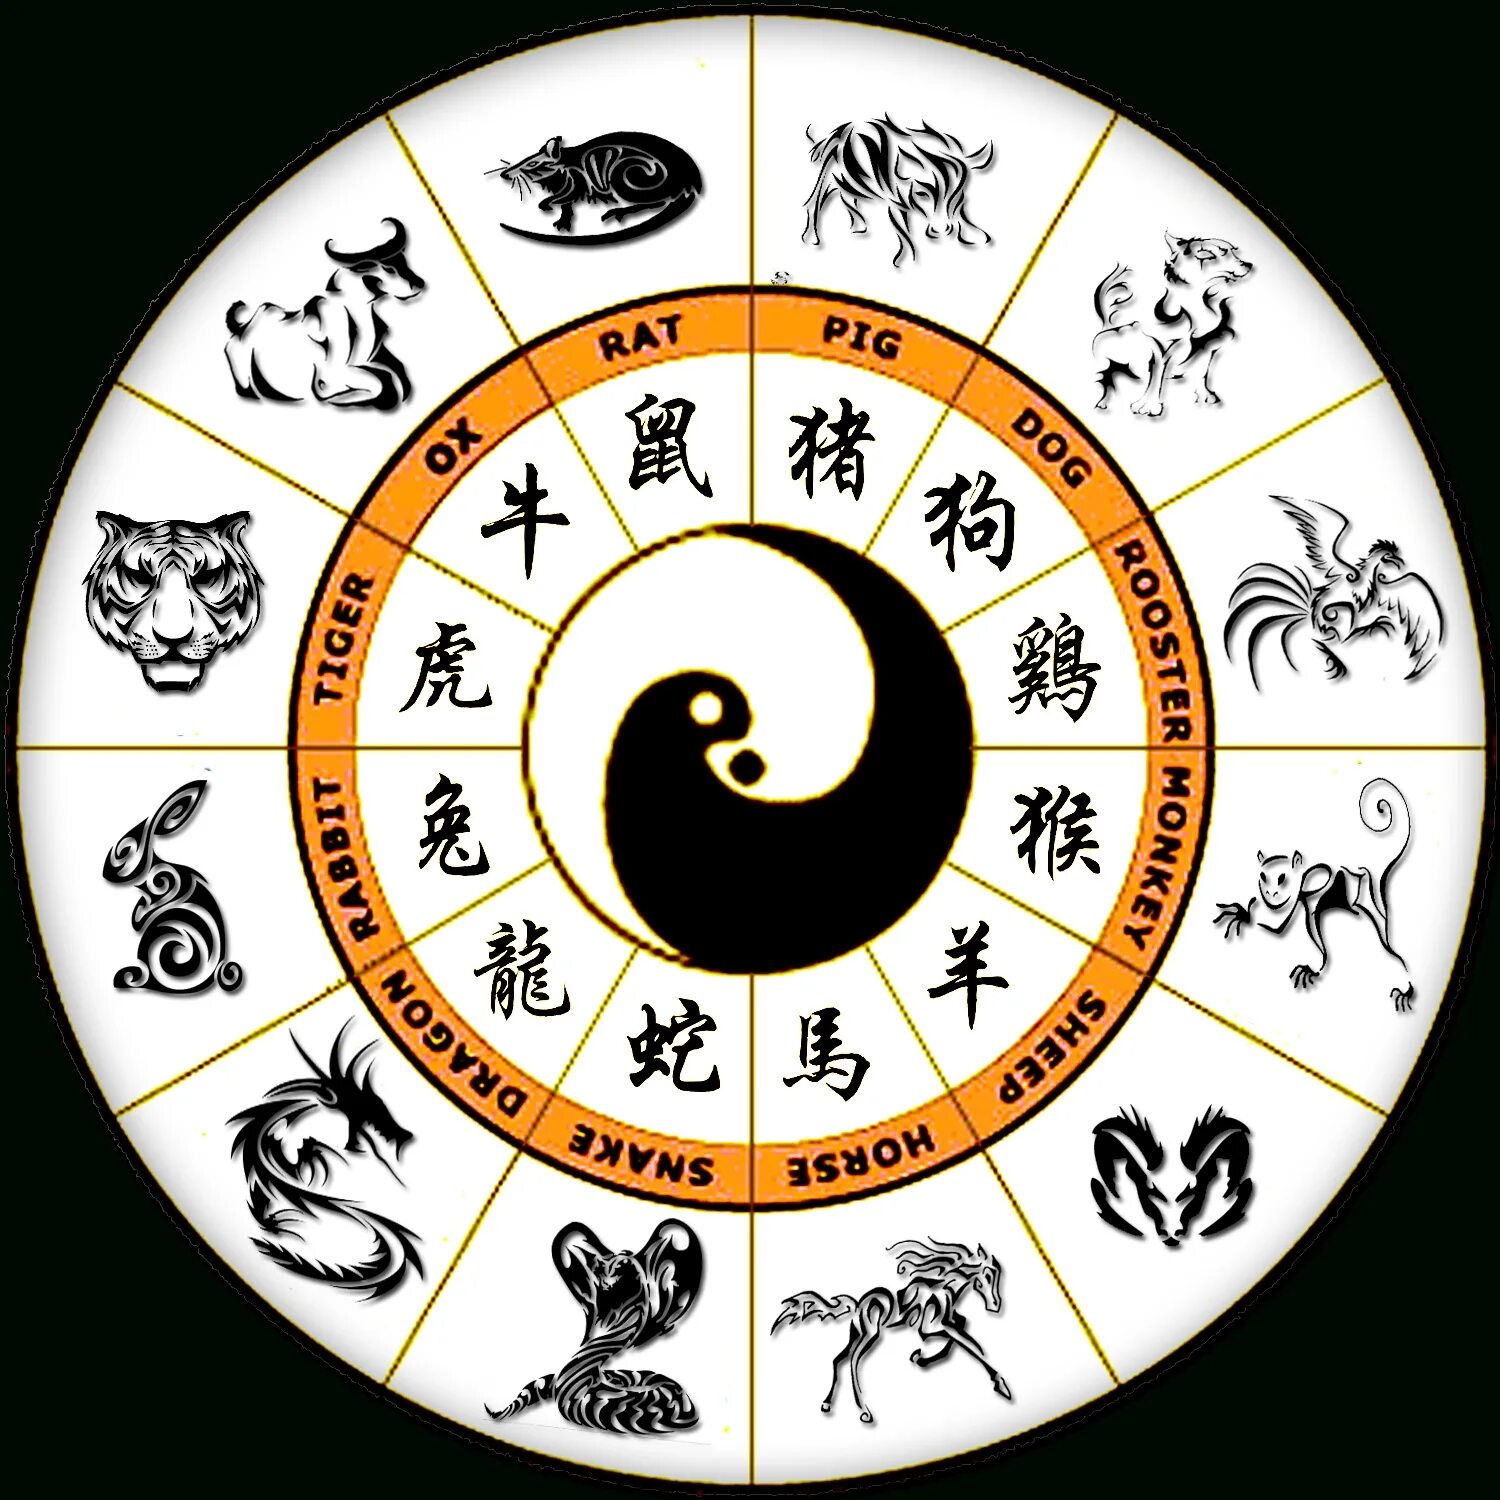 Звери знаков зодиака. Зодиакальный круг знаков зодиака по годам. Китайский Зодиакальный круг. Китайский Зодиакальный круг по годам. Китайские знаки зодиака по годам.